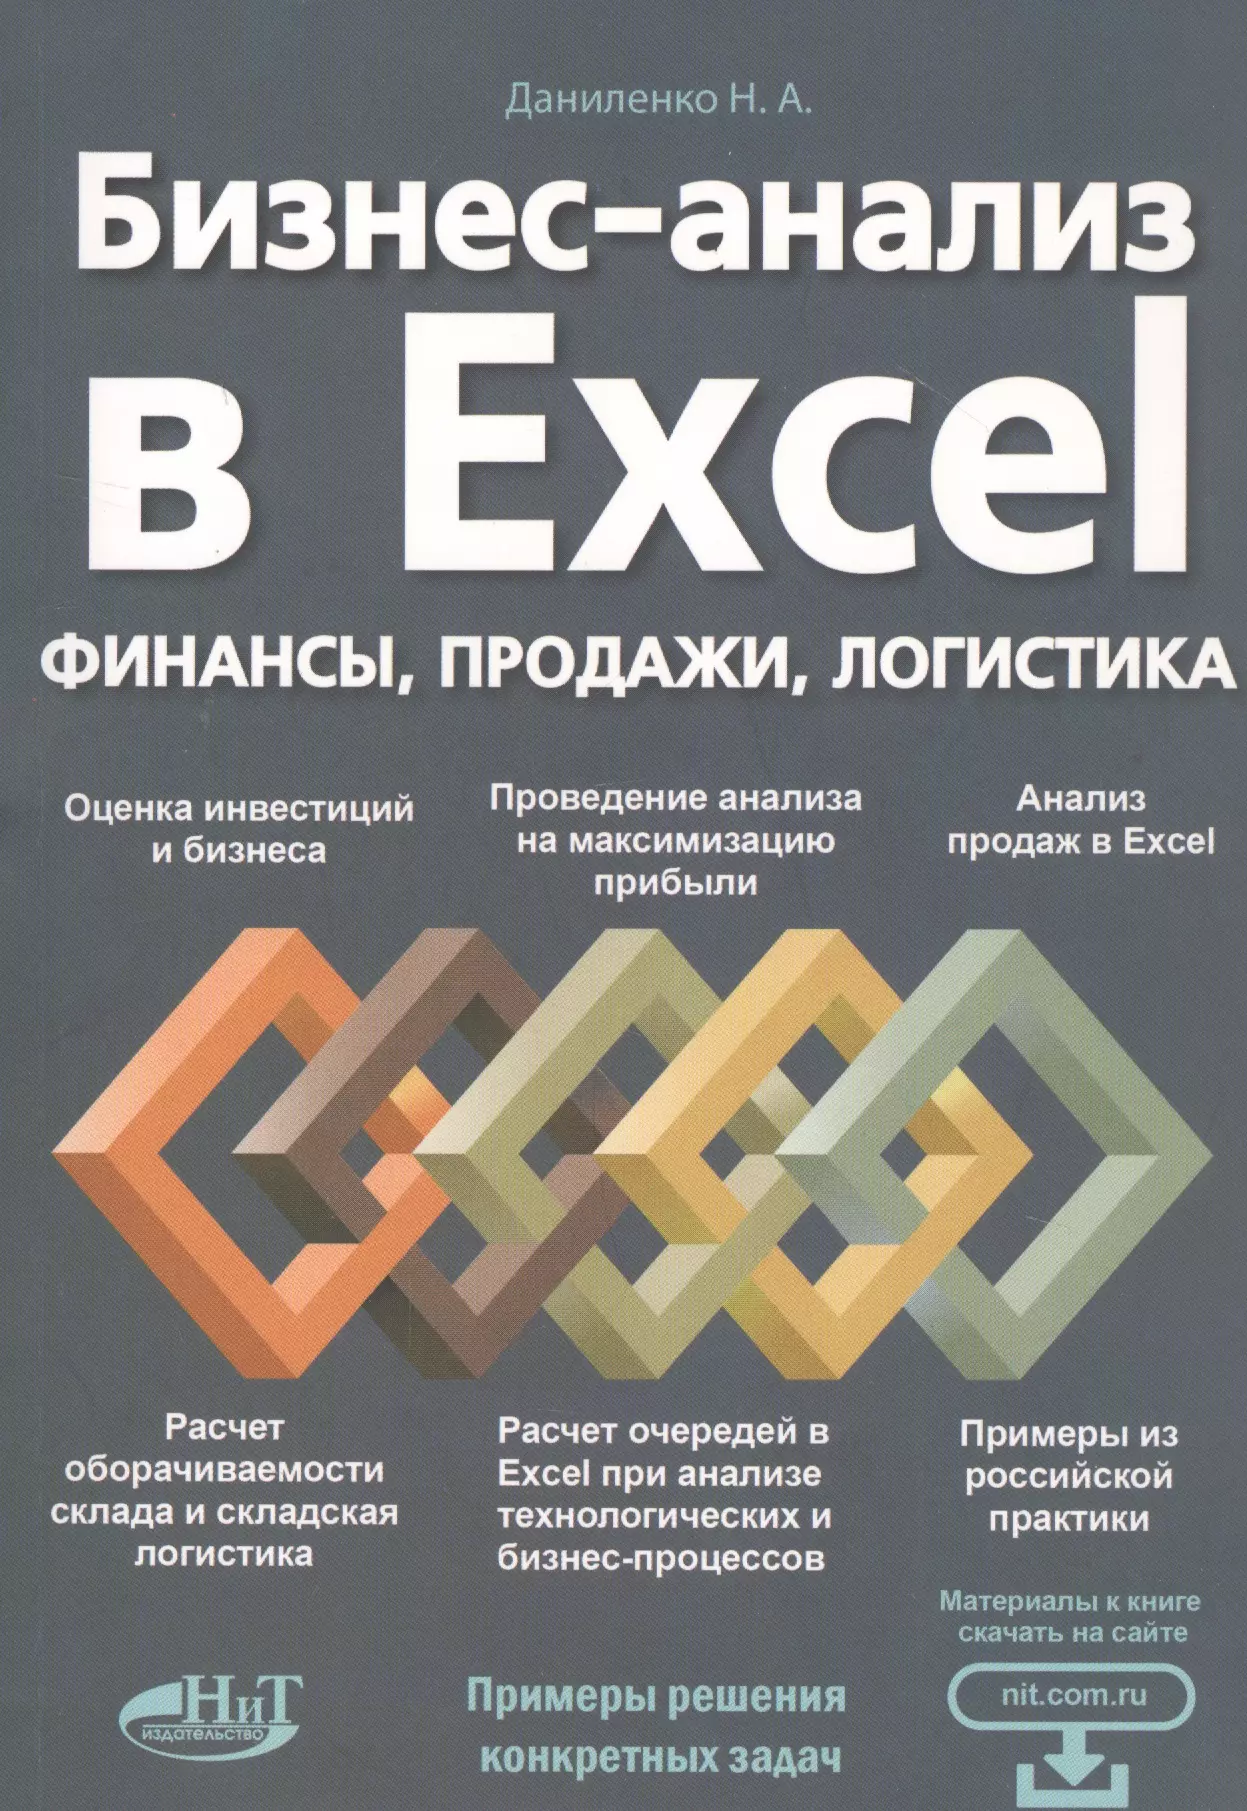 Бизнес-анализ в Excеl: финансы, продажи, логистика форман дж много цифр анализ больших данных при помощи excel